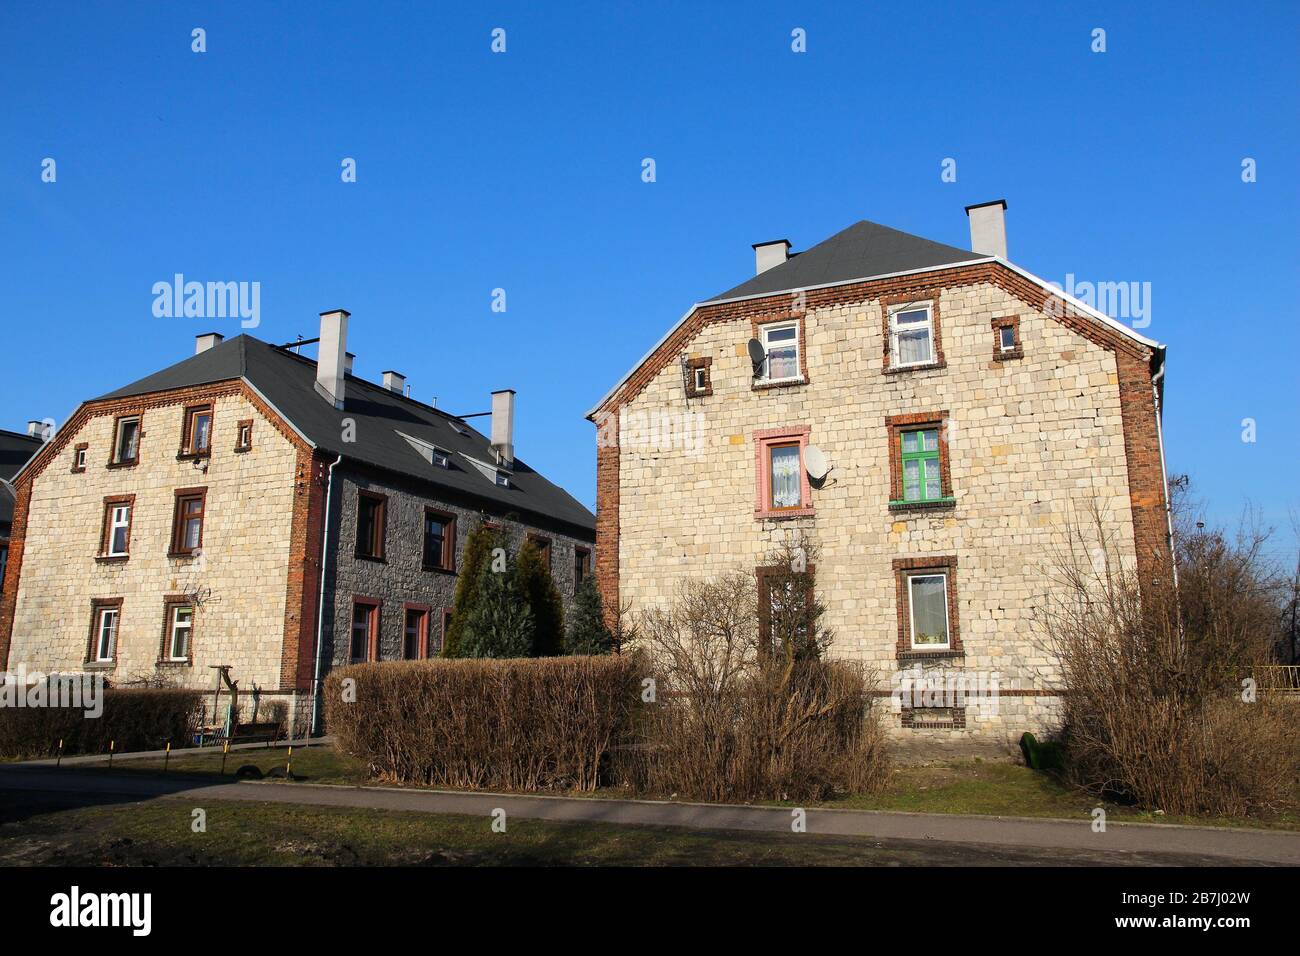 Czeladz, Poland - apartment buildings in Piaski district. Traditional Silesian architecture called 'familok'. Stock Photo